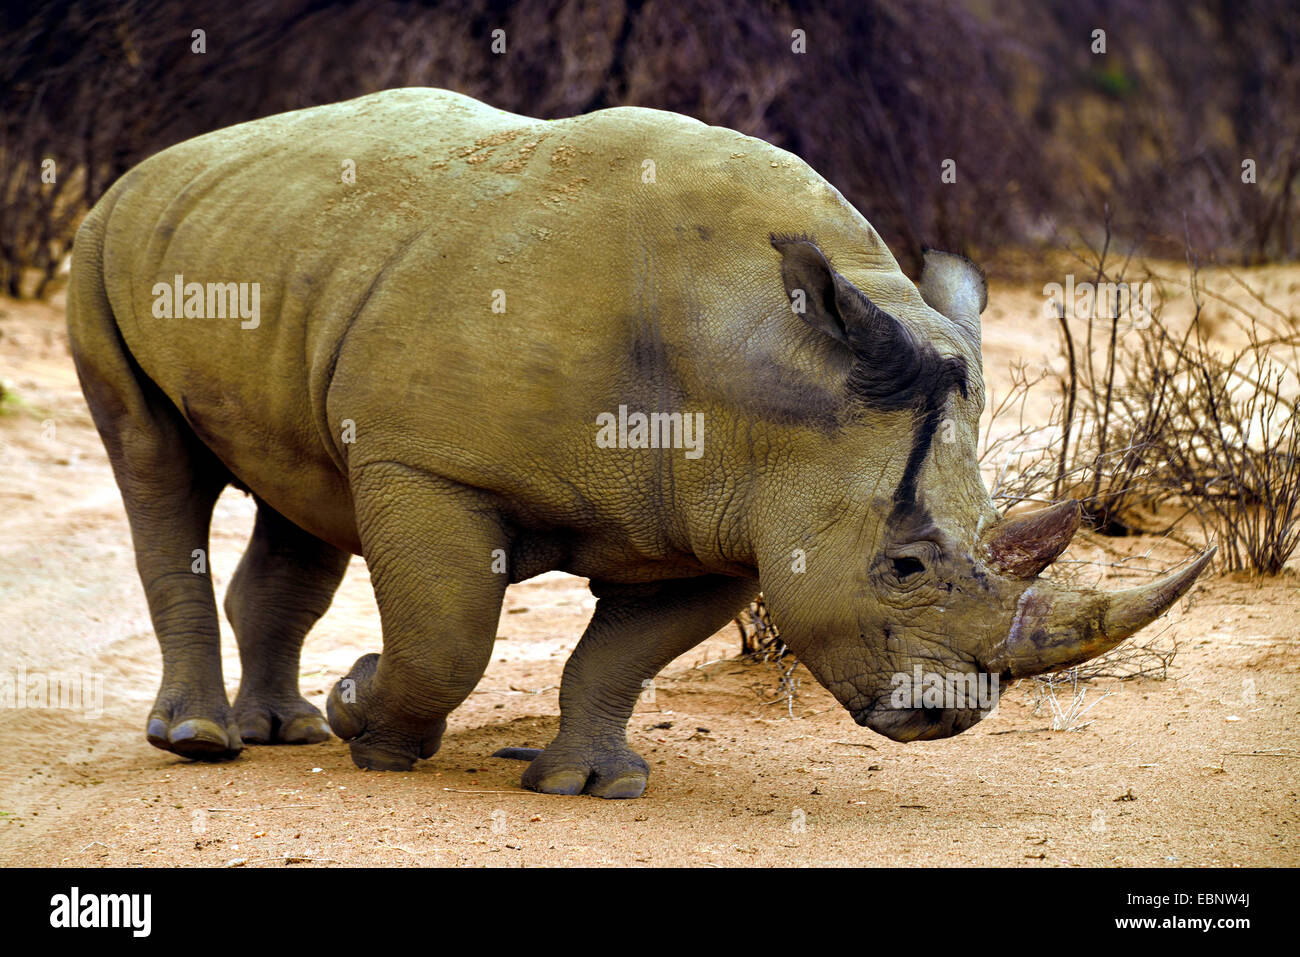 El rinoceronte blanco, cuadrado-labiado, Rinocerontes Rinoceronte de hierba (Ceratotherium simum), va en el suelo arenoso, Namibia Foto de stock